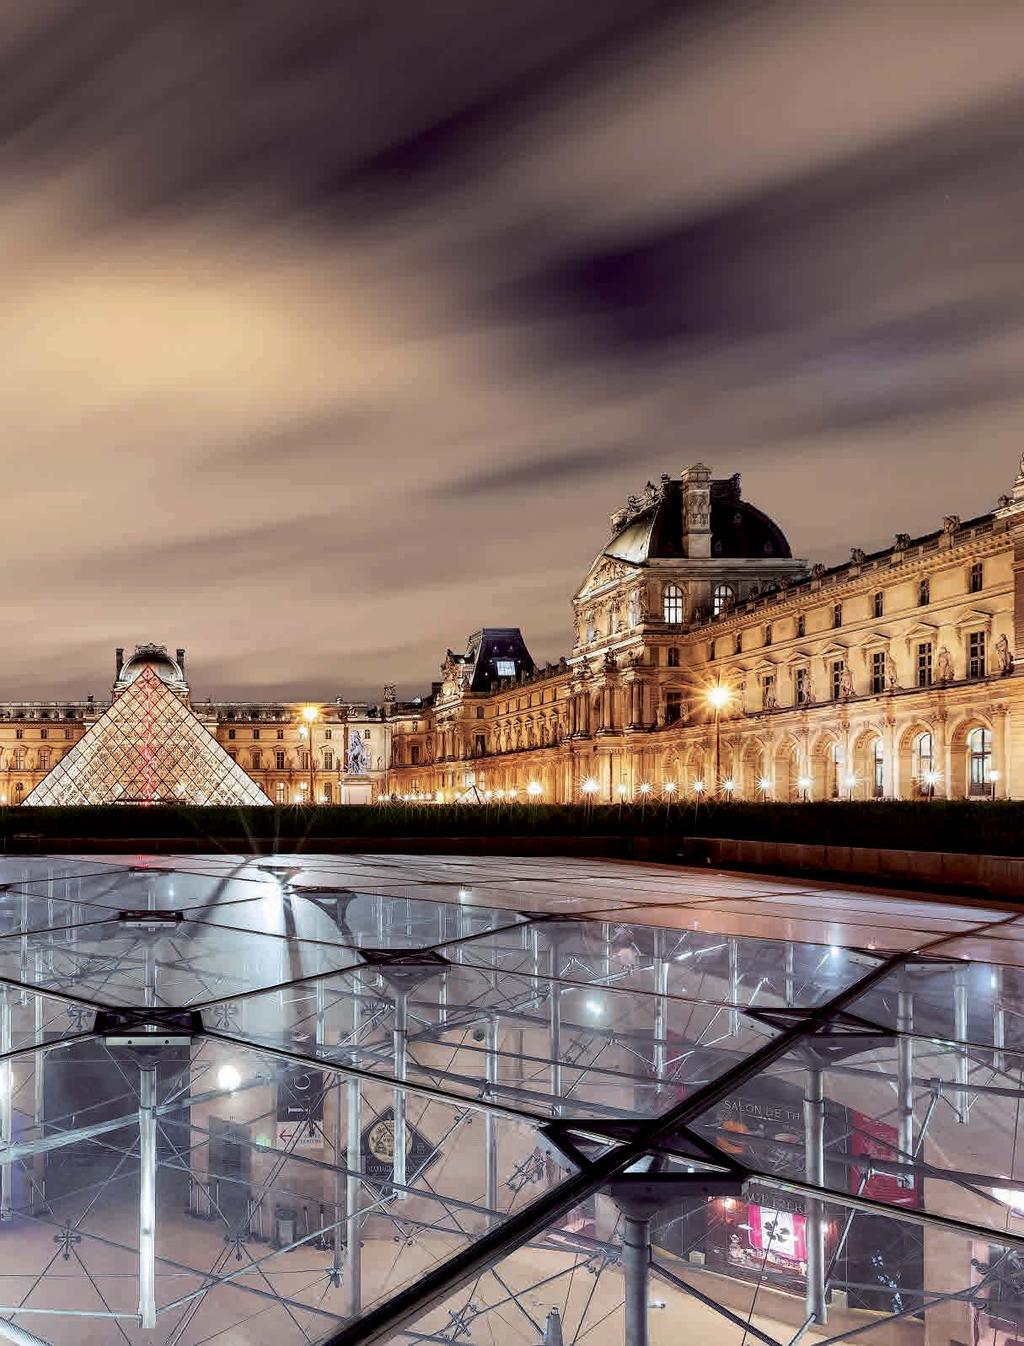 IMPRESSIONEN 12 13 Grande Nation Wenn man vom Leben wie Gott in Frankreich spricht, so stellt man sich unwillkürlich ein Leben zwischen Champs-Élysées und Louvre (hier mit der gläsernen Pyramide des